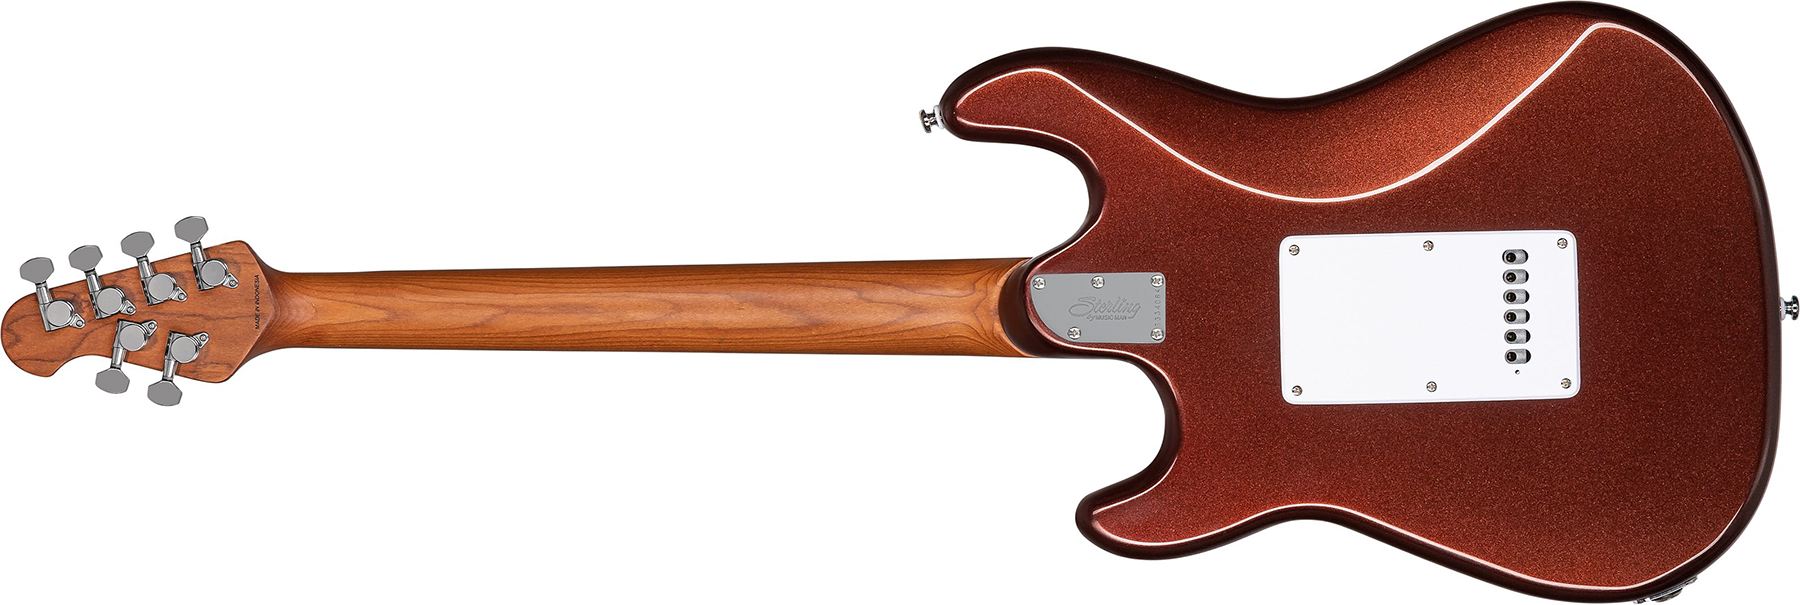 Sterling By Musicman Cutlass Ct50hss Trem Rw - Dropped Copper - Guitare Électrique Forme Str - Variation 1